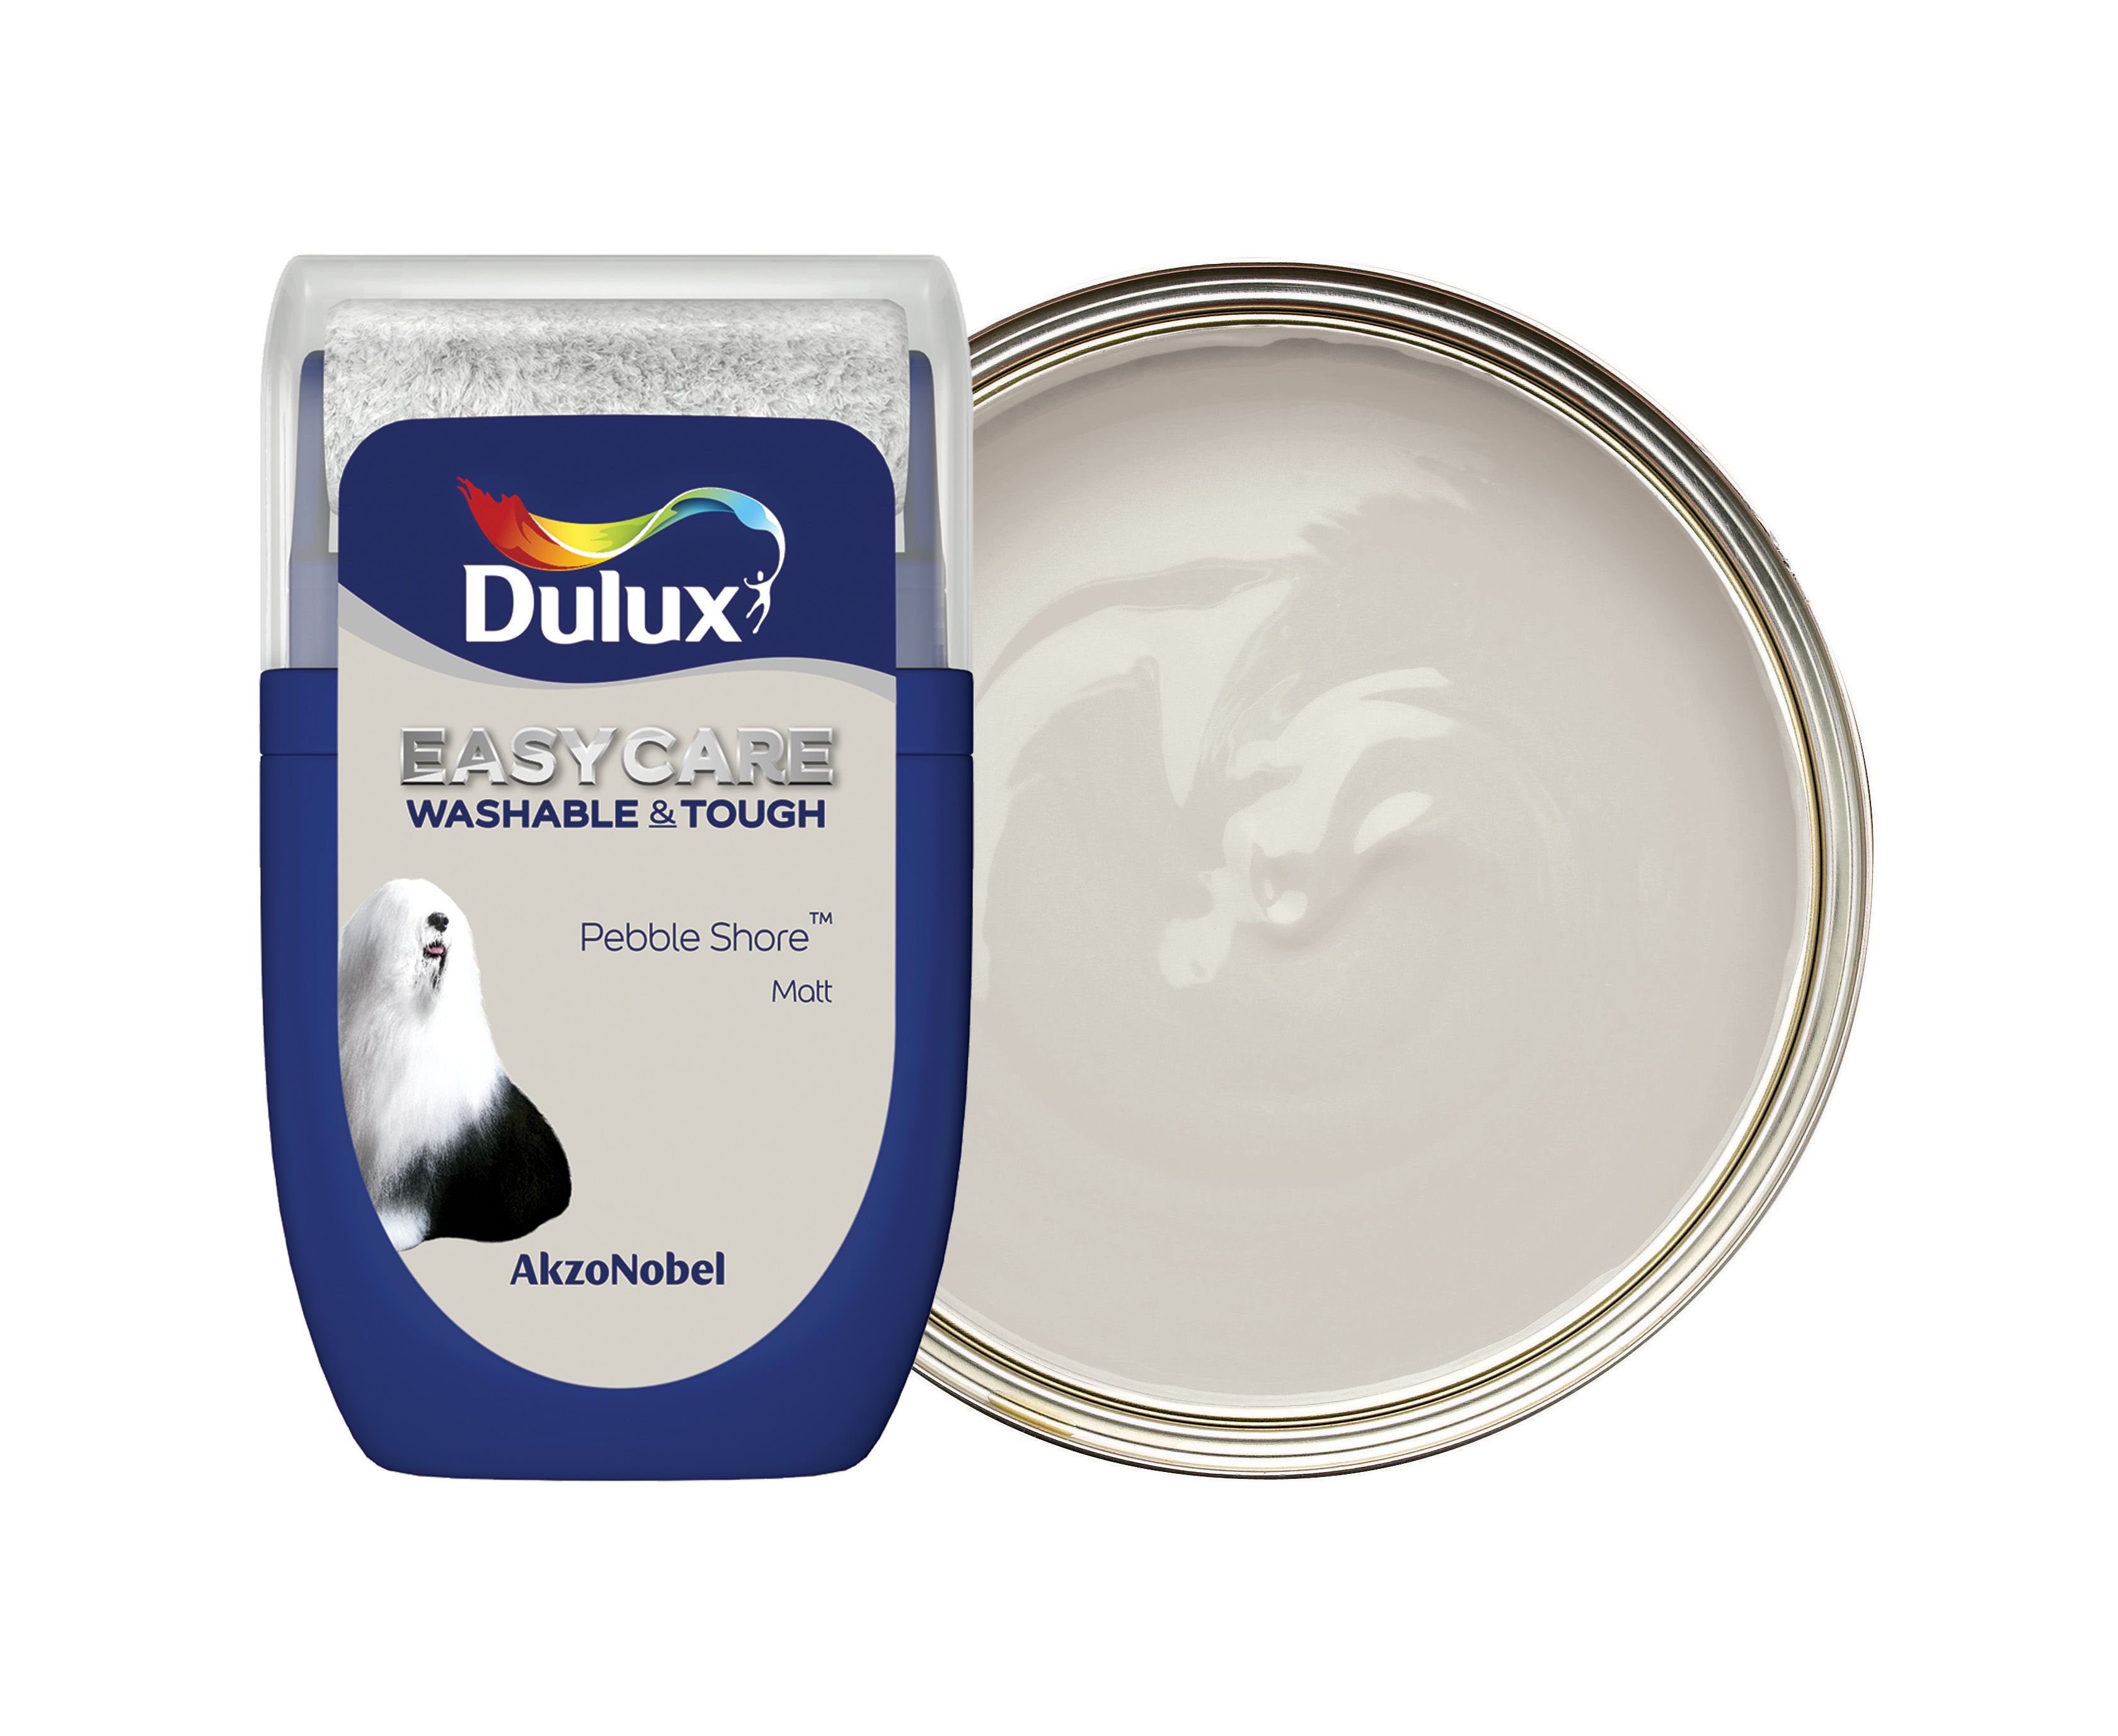 Dulux Easycare Washable & Tough Paint Tester Pot - Pebble Shore - 30ml